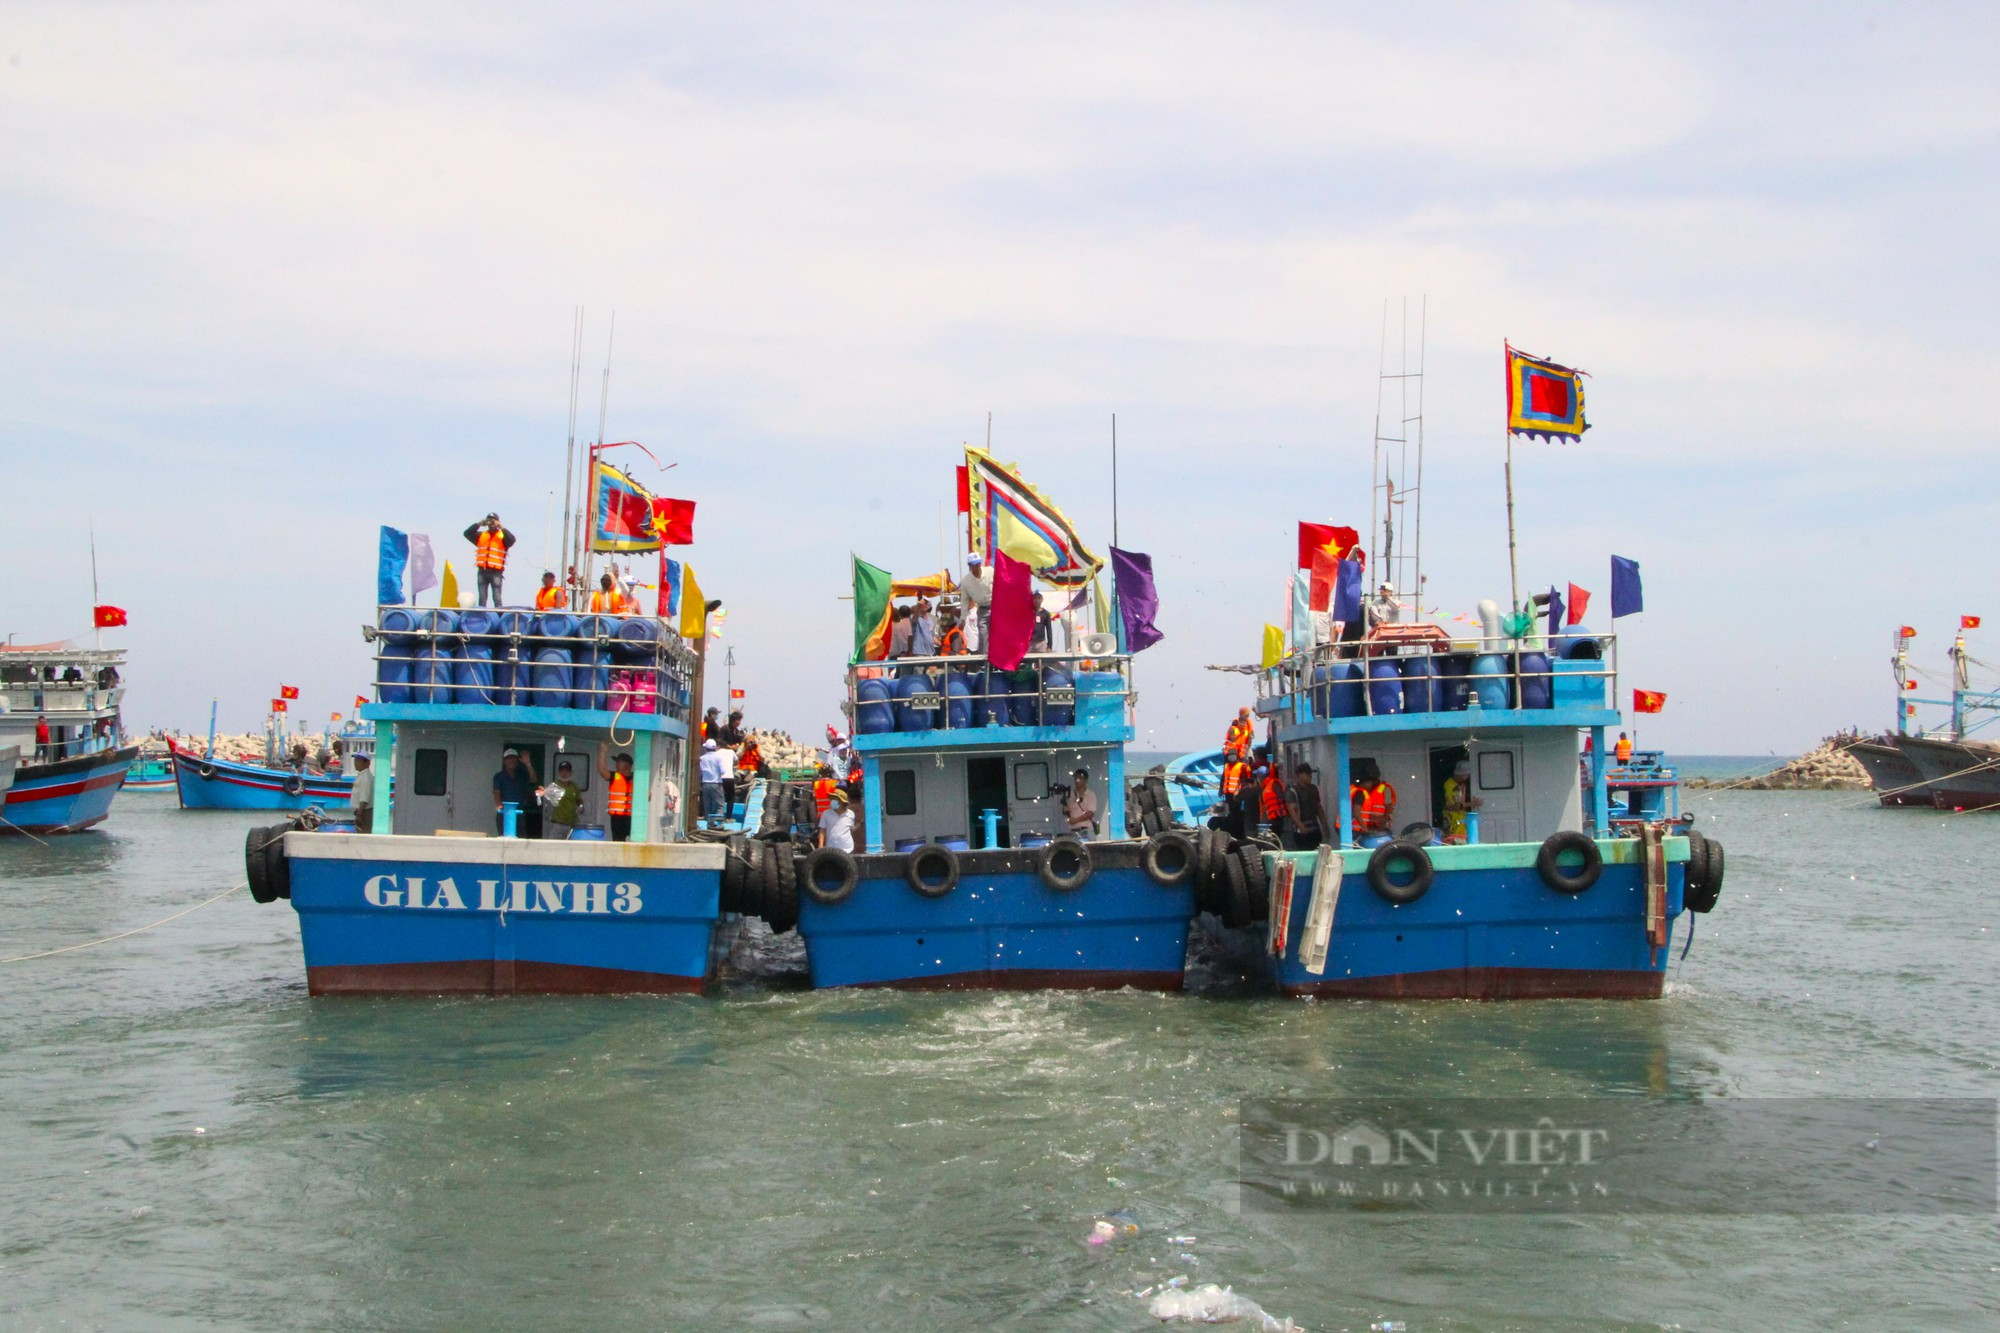 Hàng ngàn du khách và ngư dân tham gia Lễ hội cầu ngư Lăng Thần Nam Hải Mỹ Tân ở Ninh Thuận - Ảnh 4.